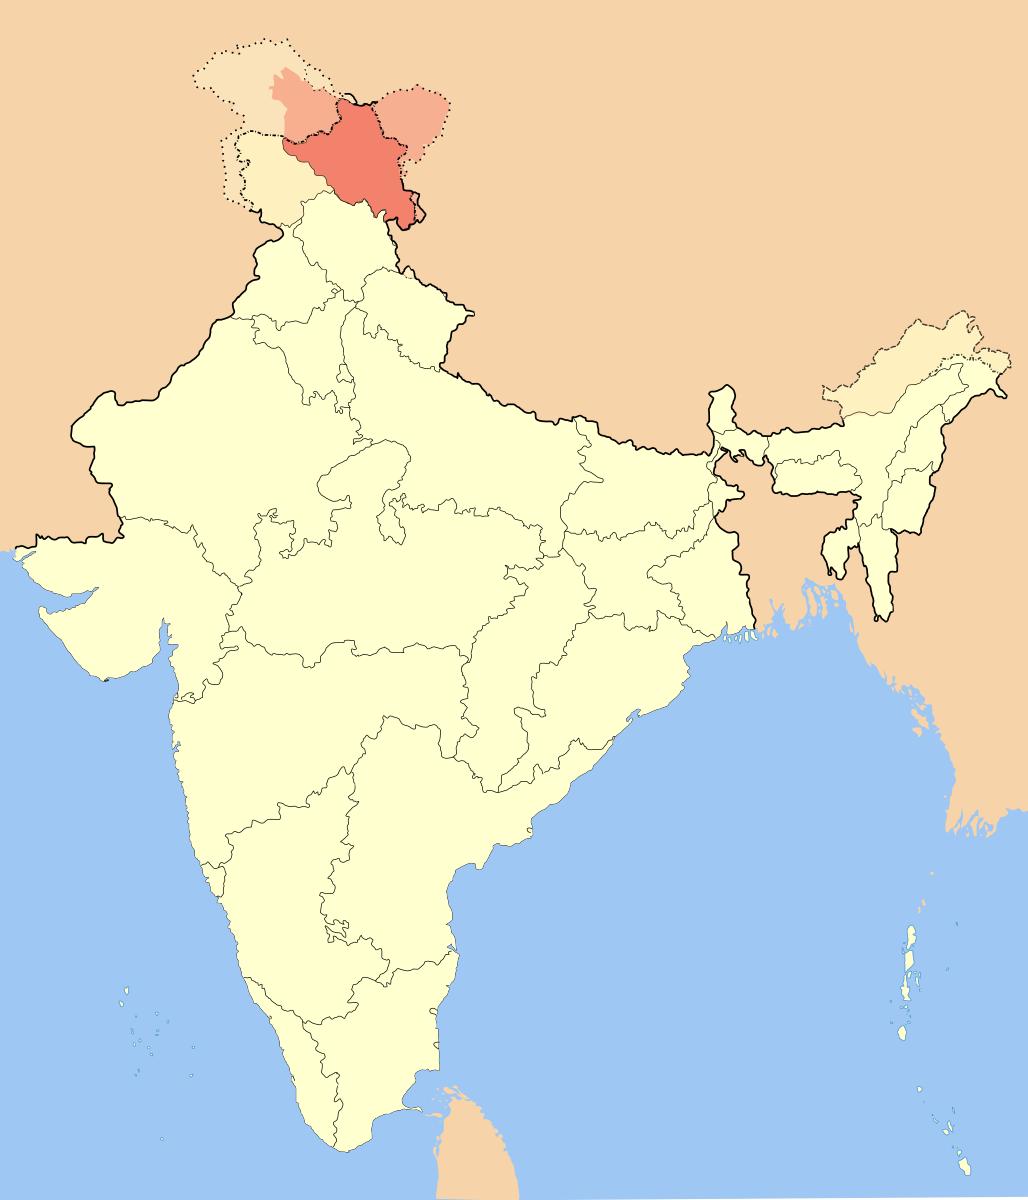 Местность Ладакх на карте Индии.  фото: картинки  яндекса.